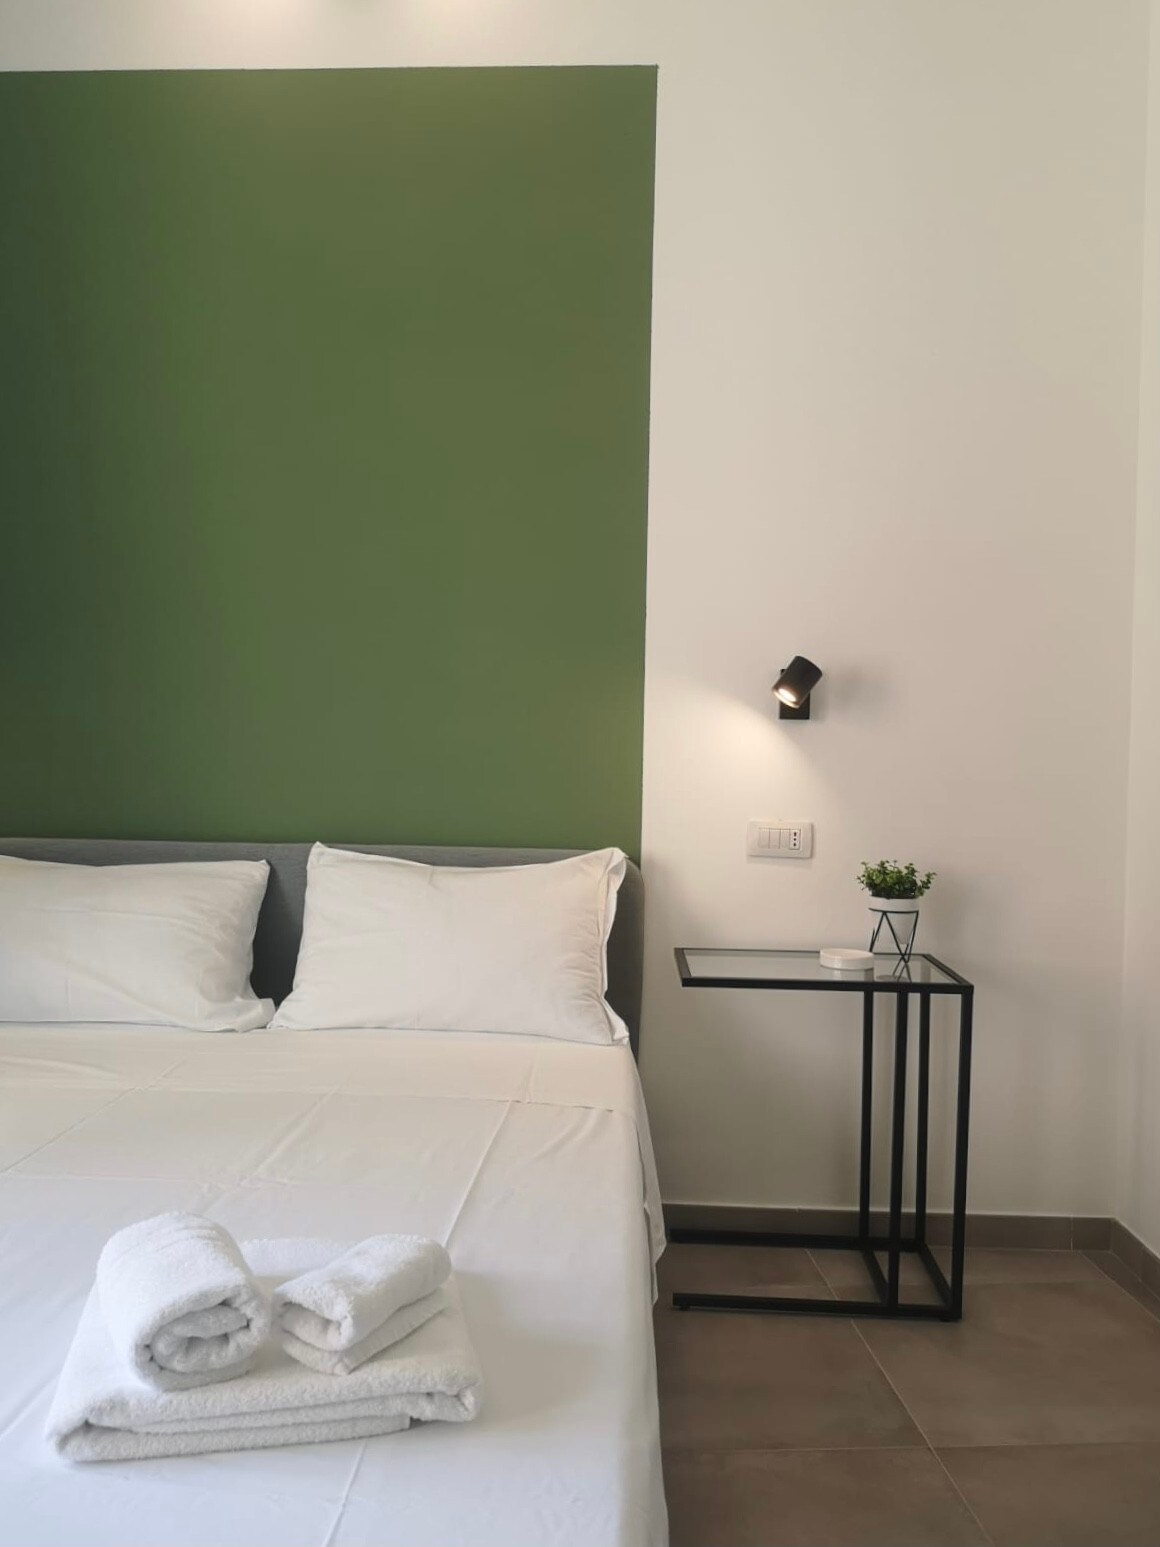 ISTAI Cagliari City Center Rooms - Green